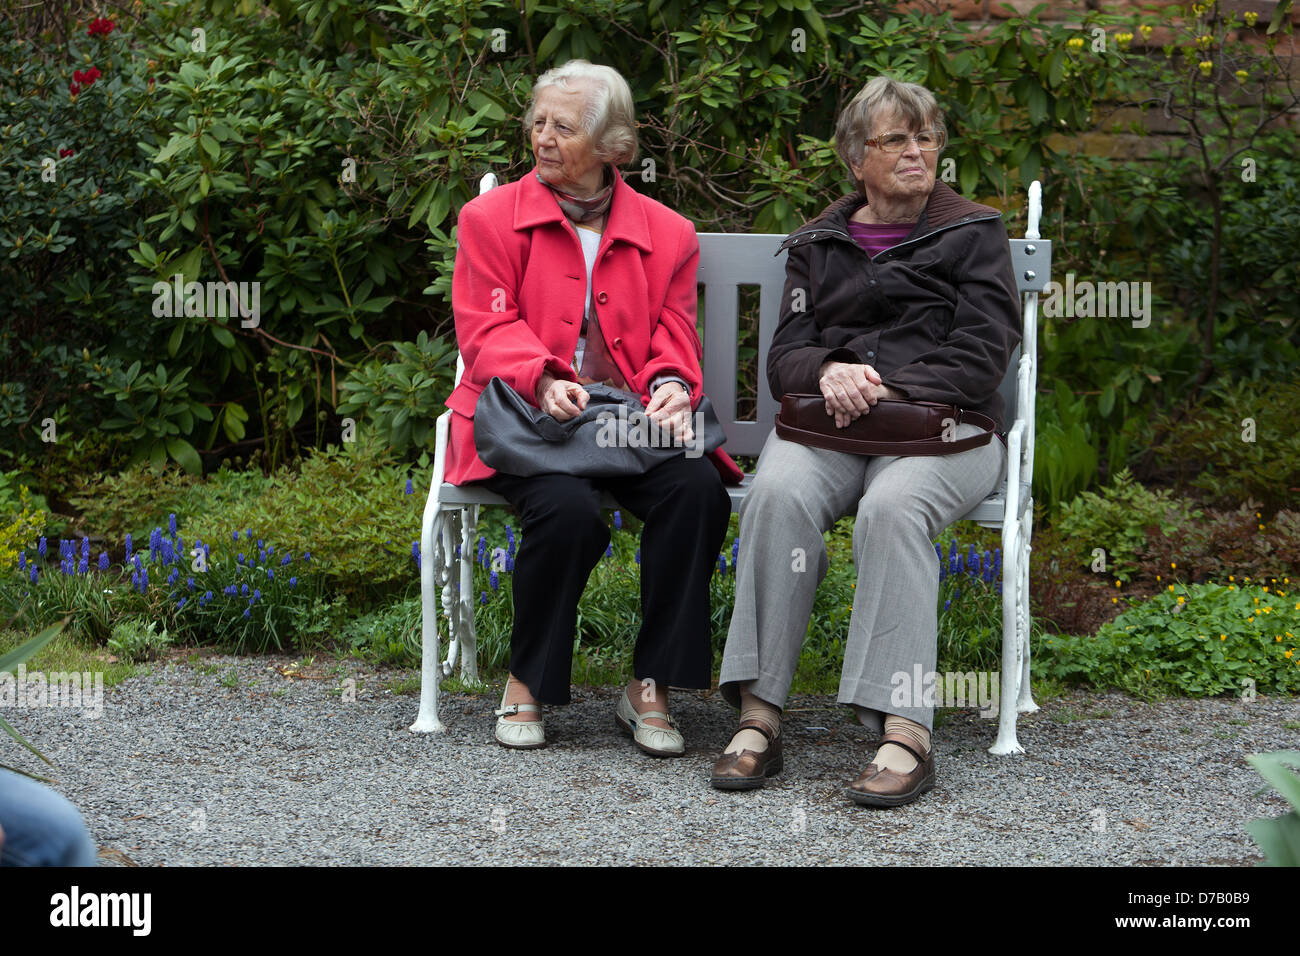 Senior women on a bench Stock Photo